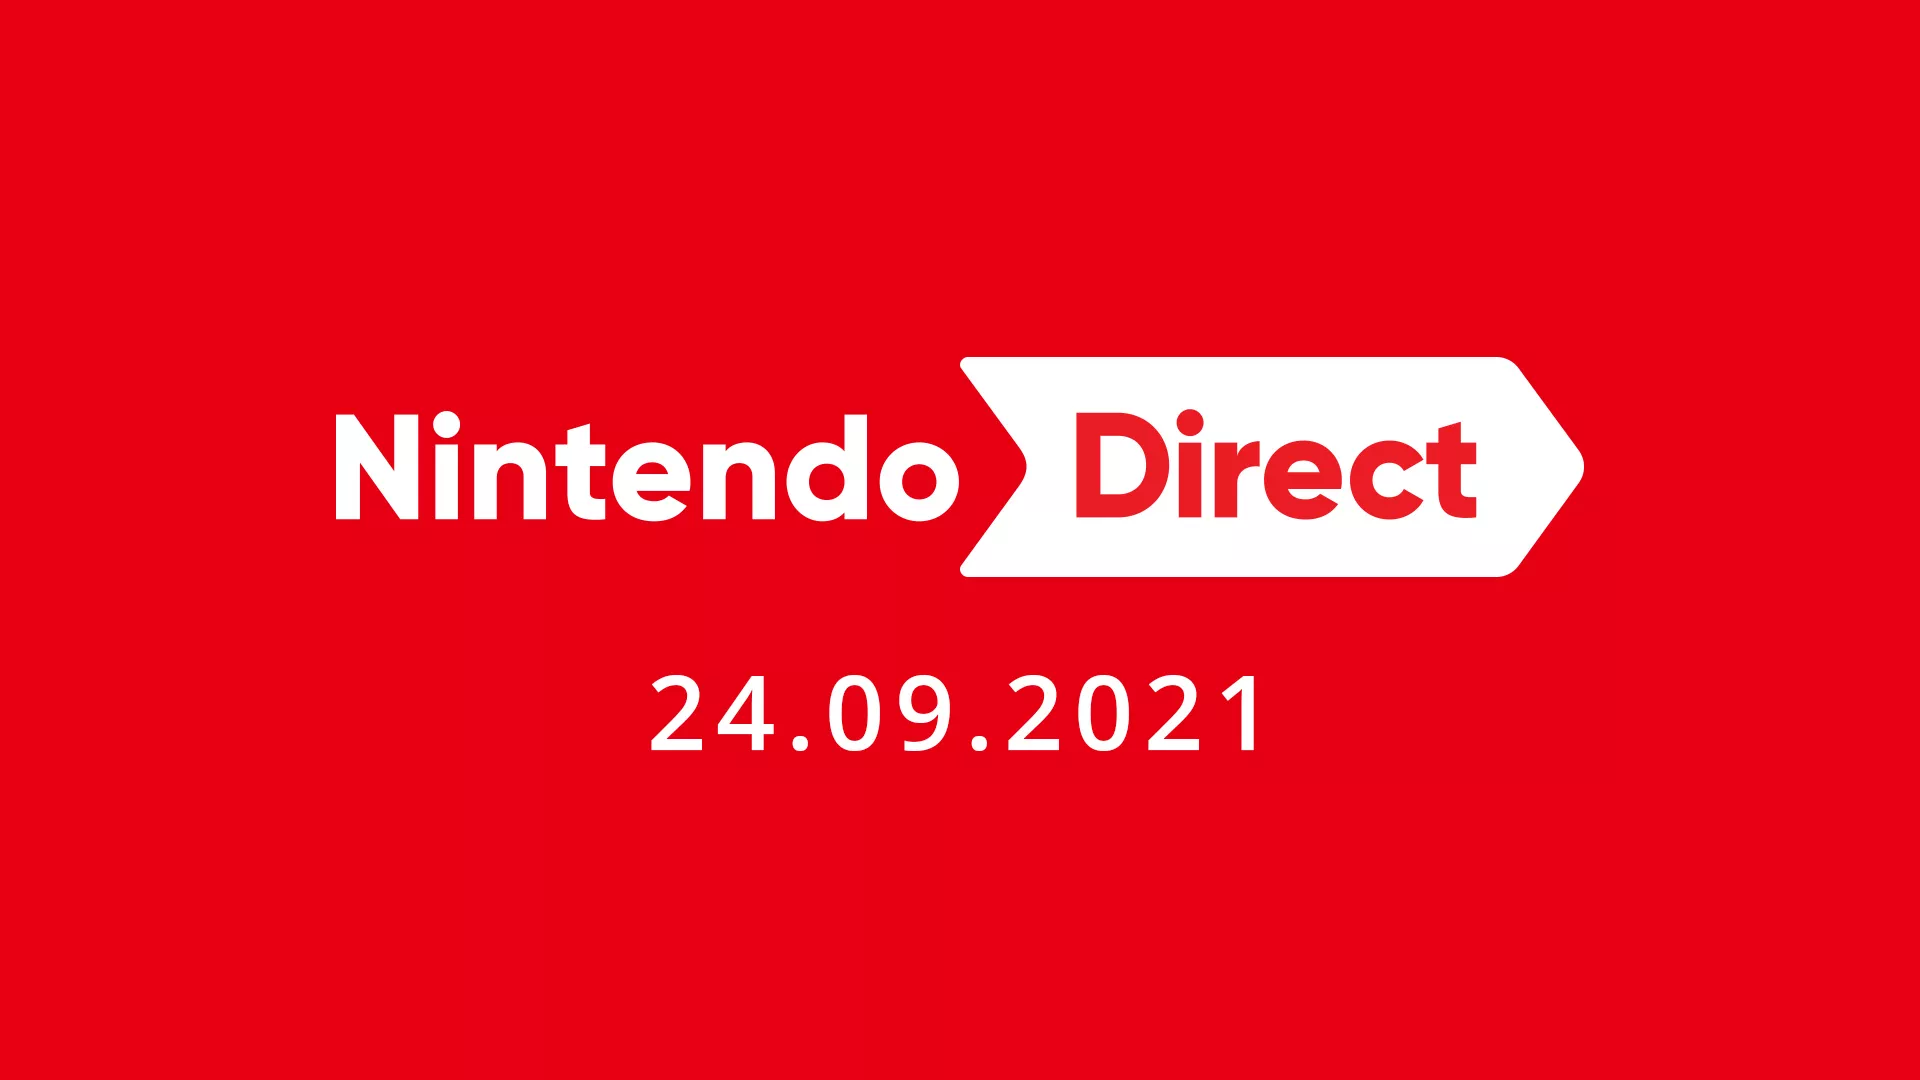 Heute Nacht um Mitternacht läuft die nächste Nintendo Direct Heropic